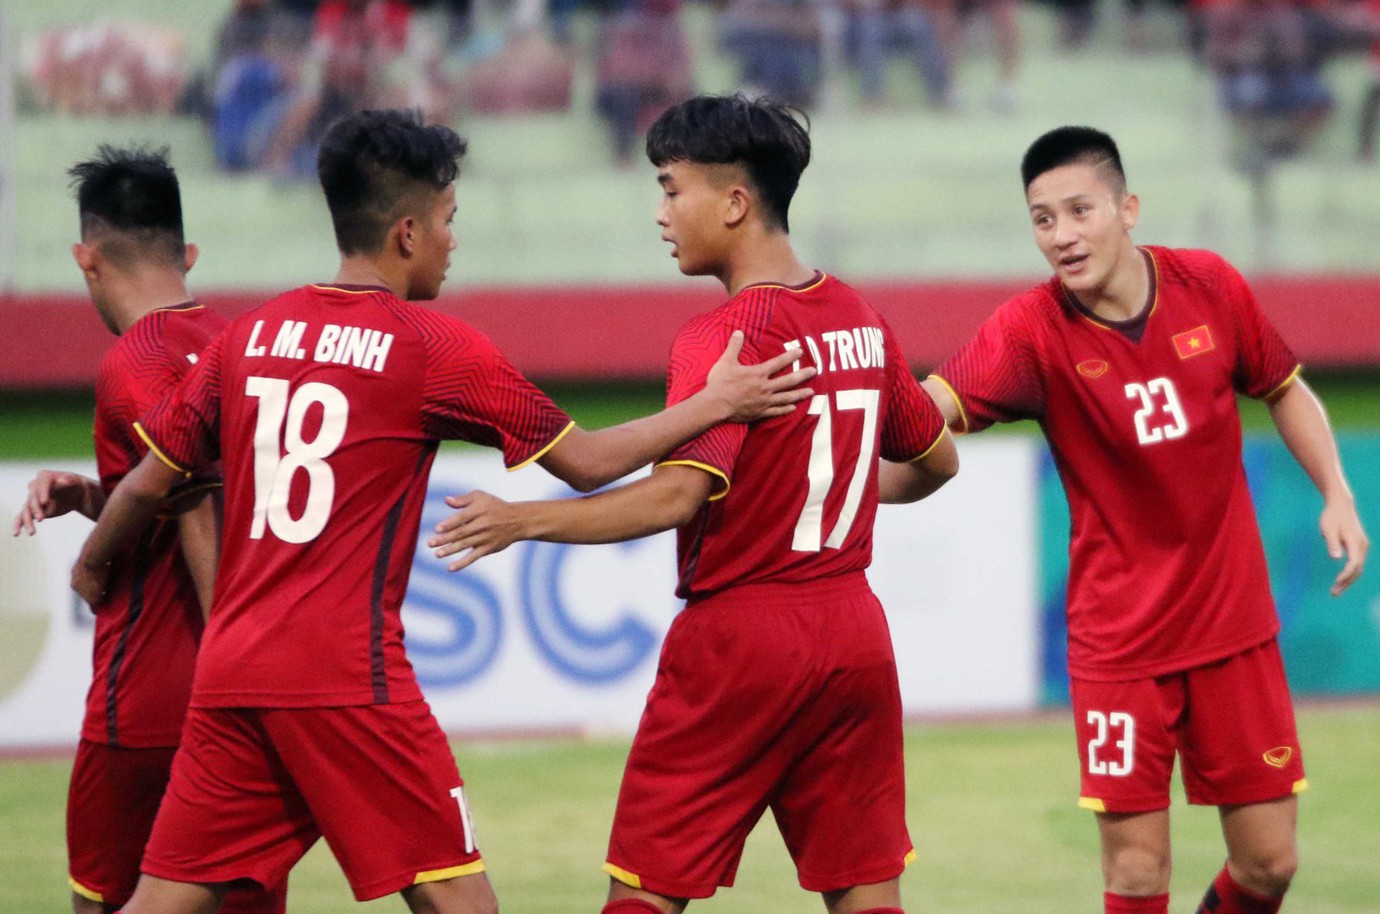 Thủ môn xuất sắc đẩy penalty, U19 Việt Nam vượt Thái Lan ở bảng xếp hạng AFF U19  - Ảnh 8.